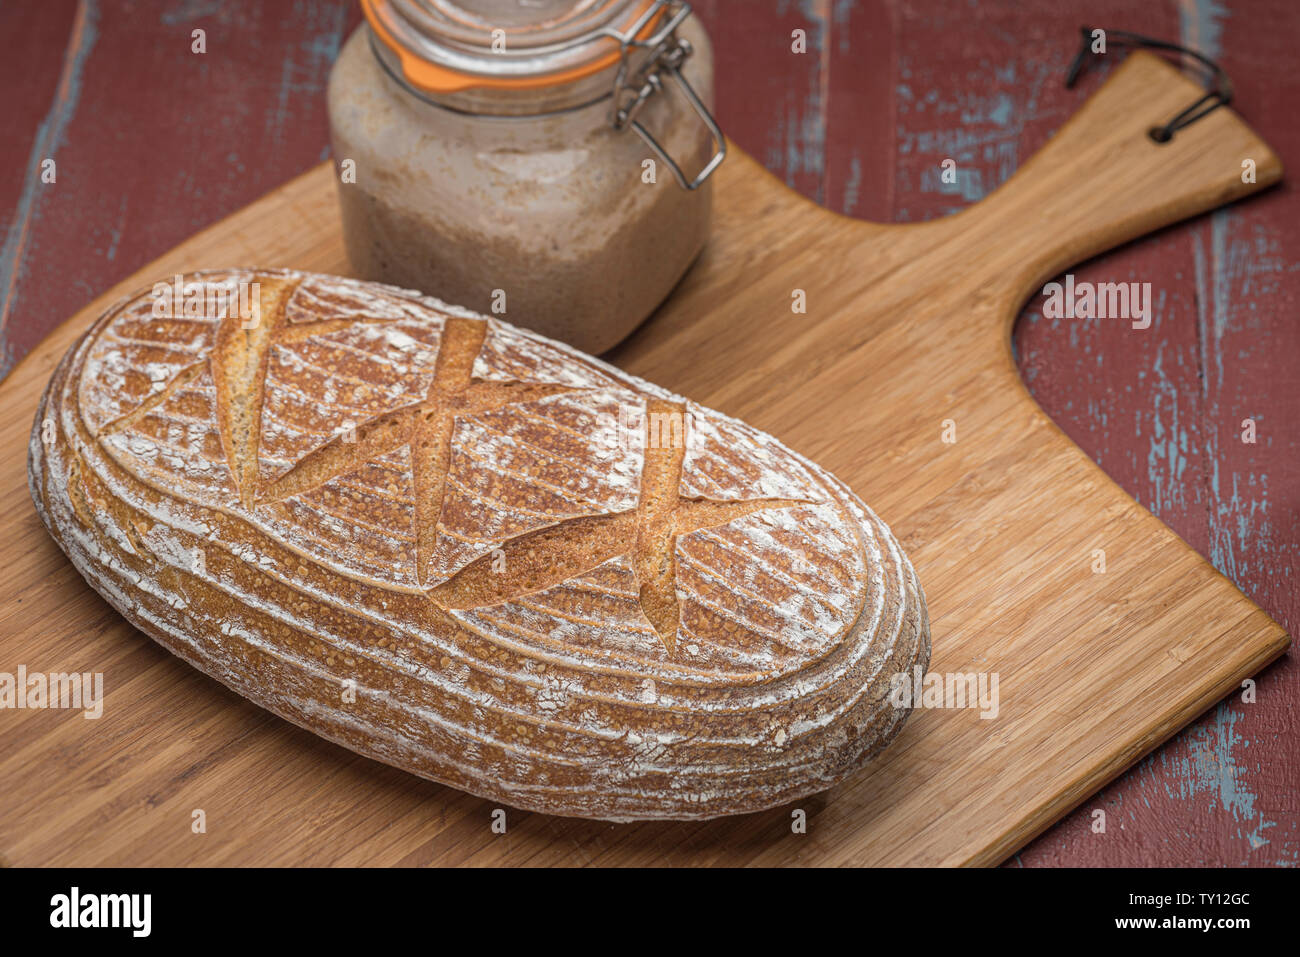 Laib Sauerteigbrot auf Holzbrett mit Kilner jar von fermentierten Starter Kultur. Stockfoto